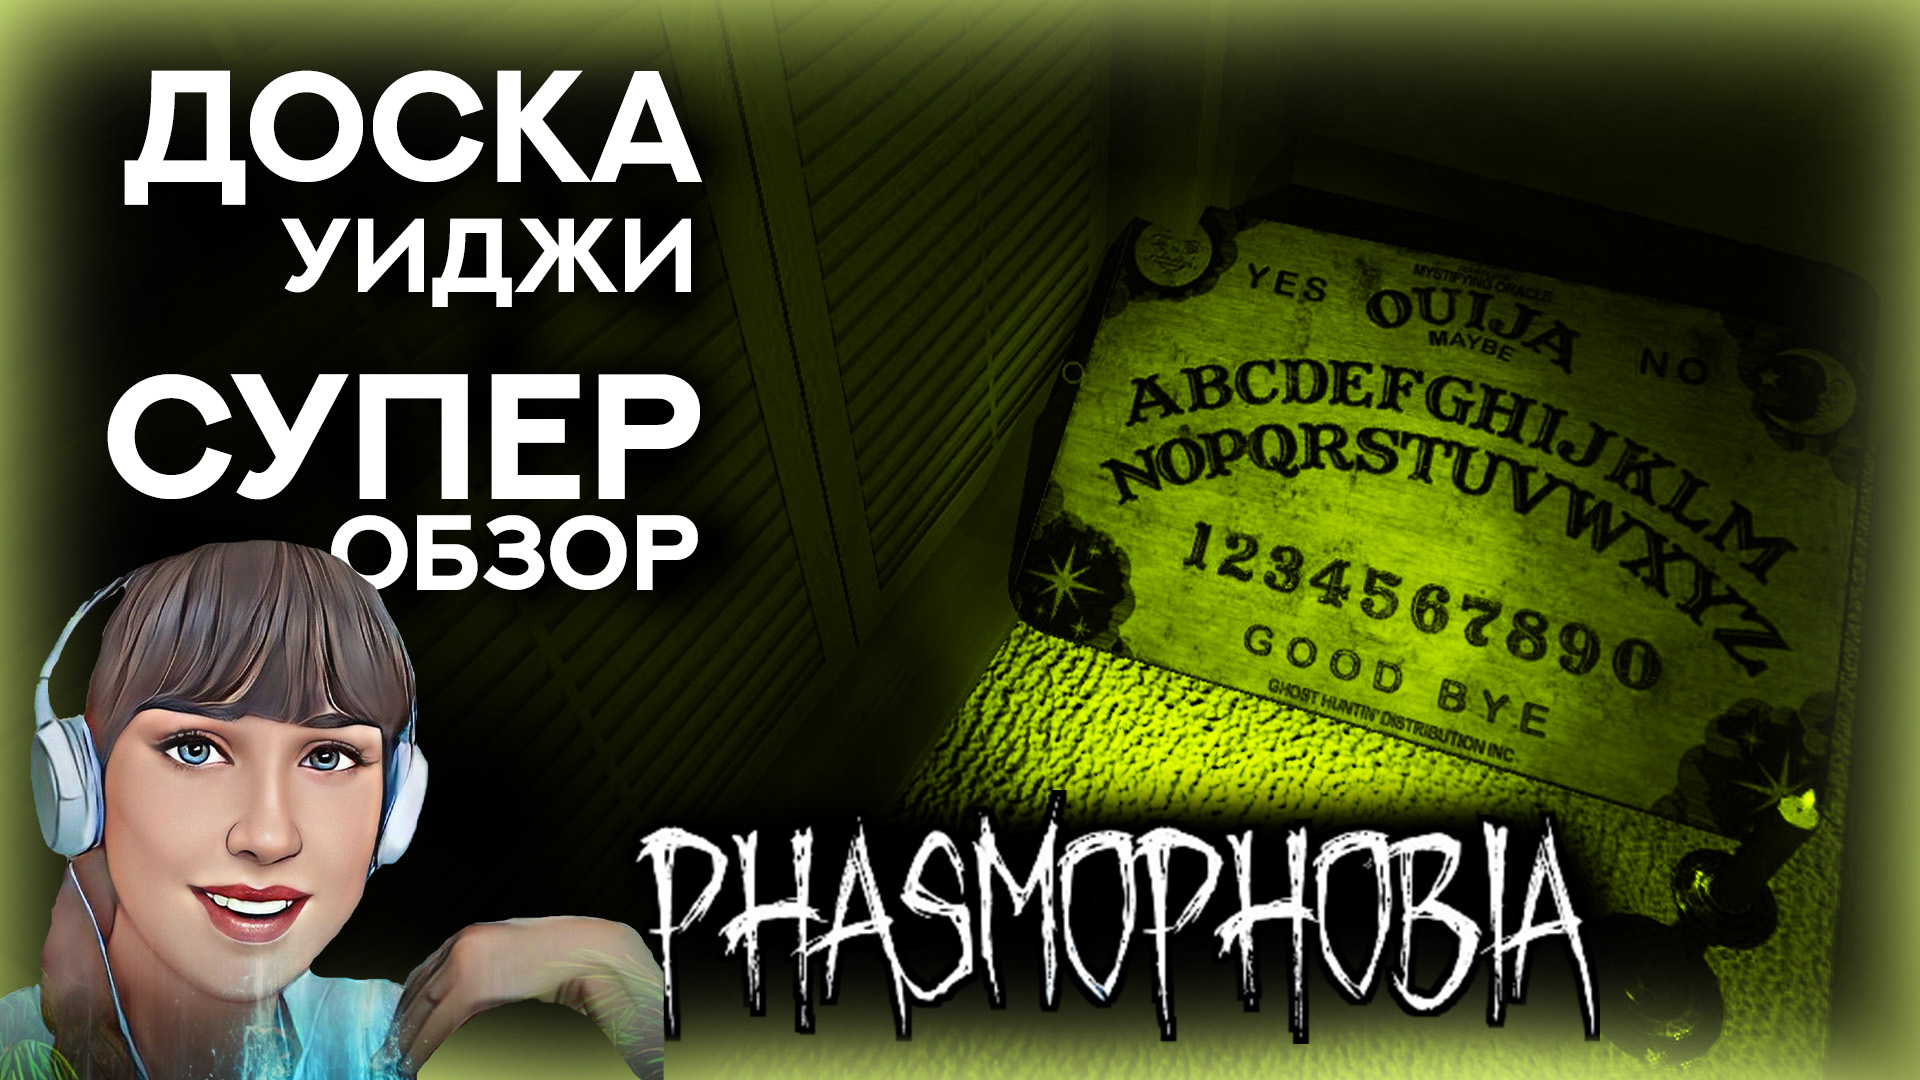 вопросы для доски уиджи phasmophobia на русском фото 21